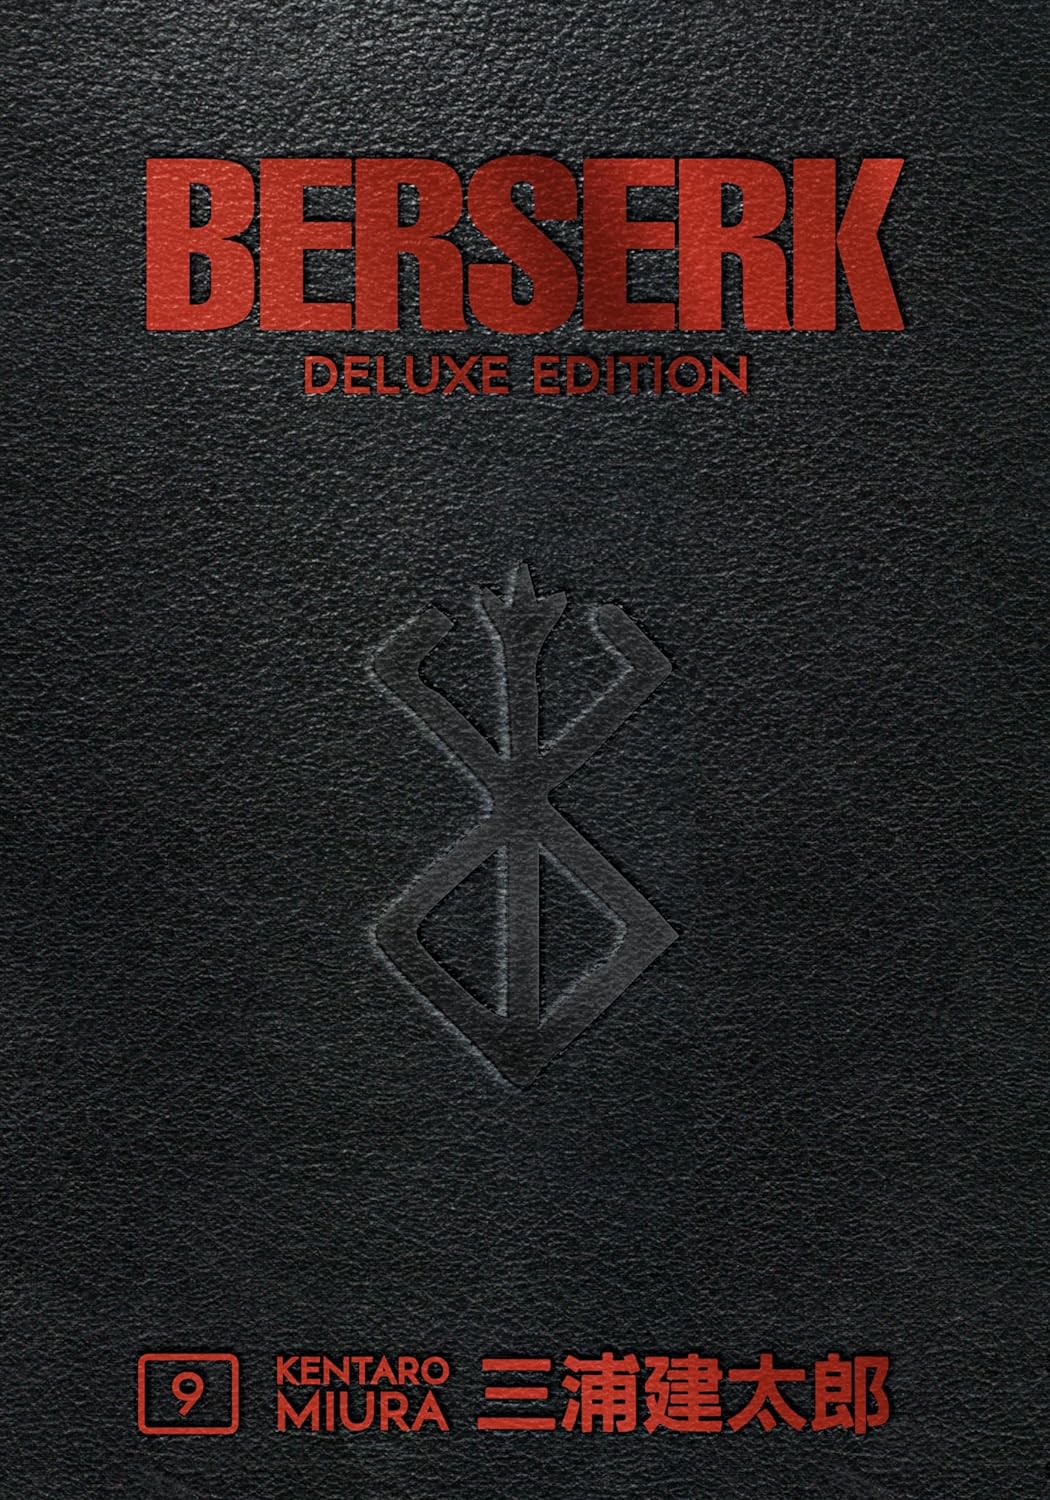 Berserk Deluxe Volume 9 $30.32 @Amazon